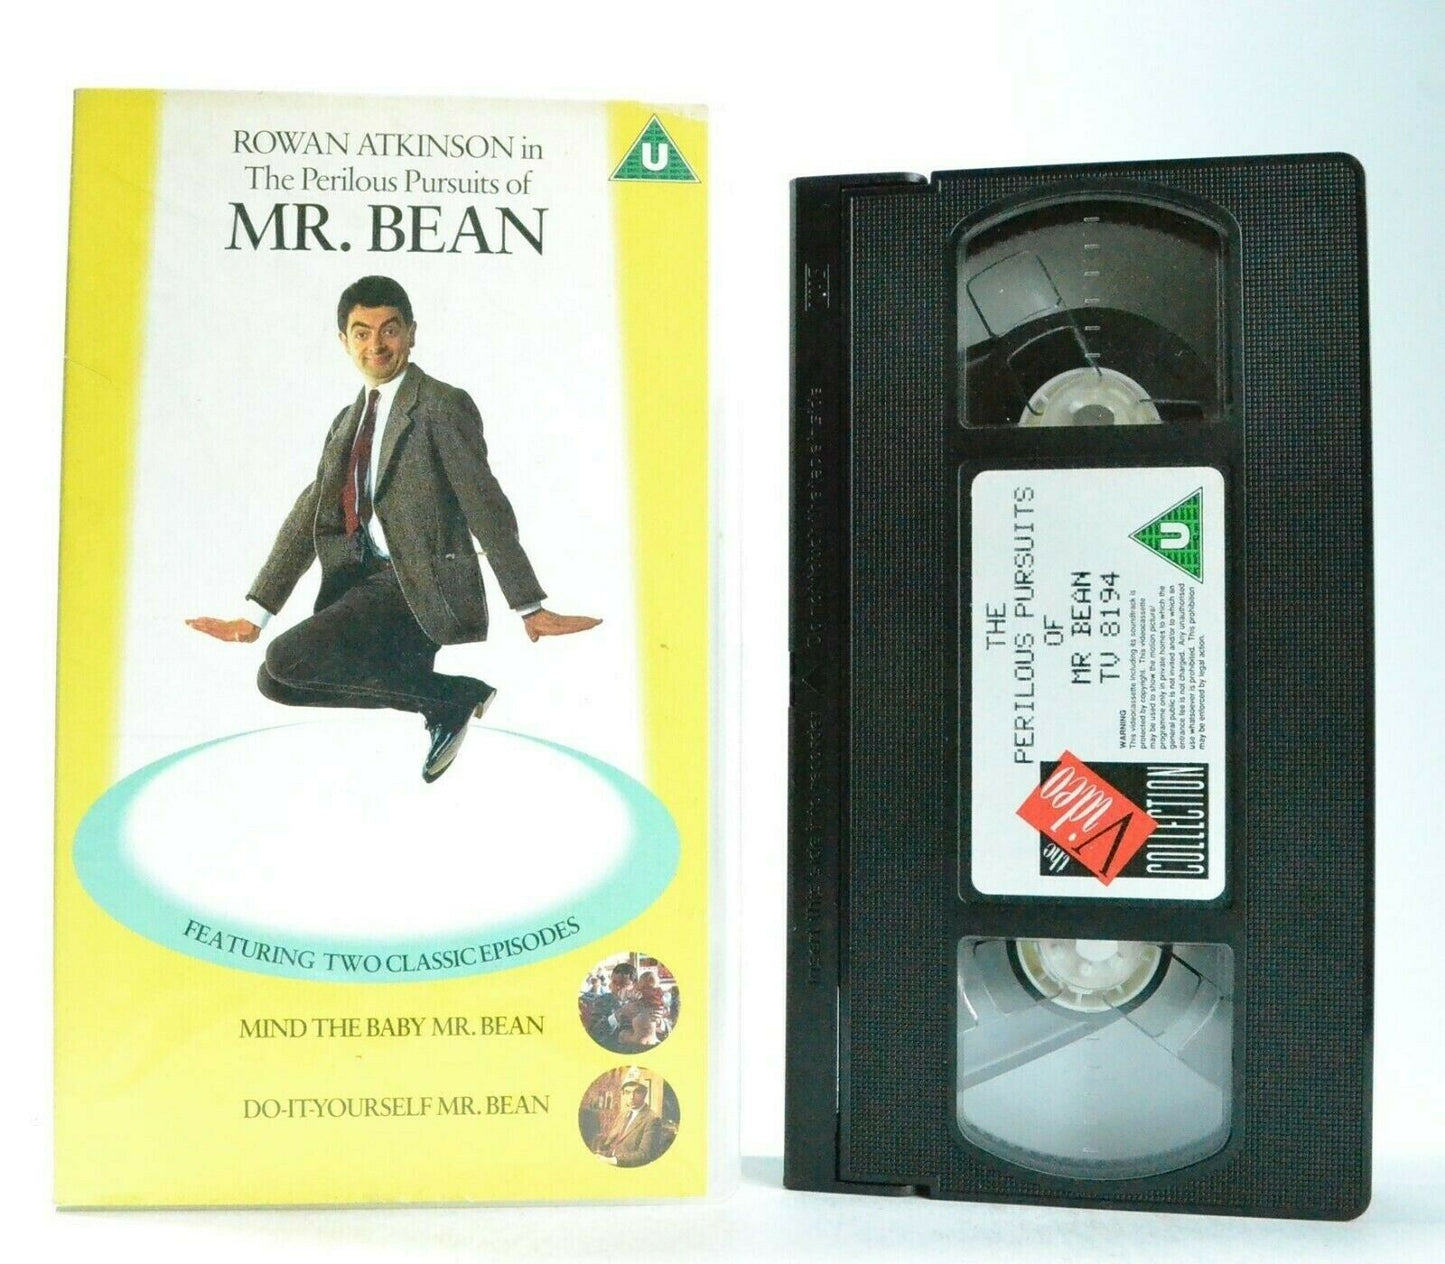 The Perilous Pursuits Of Mr.Bean: 2 Classic Episodes (1993) - R.Atkinson - VHS-